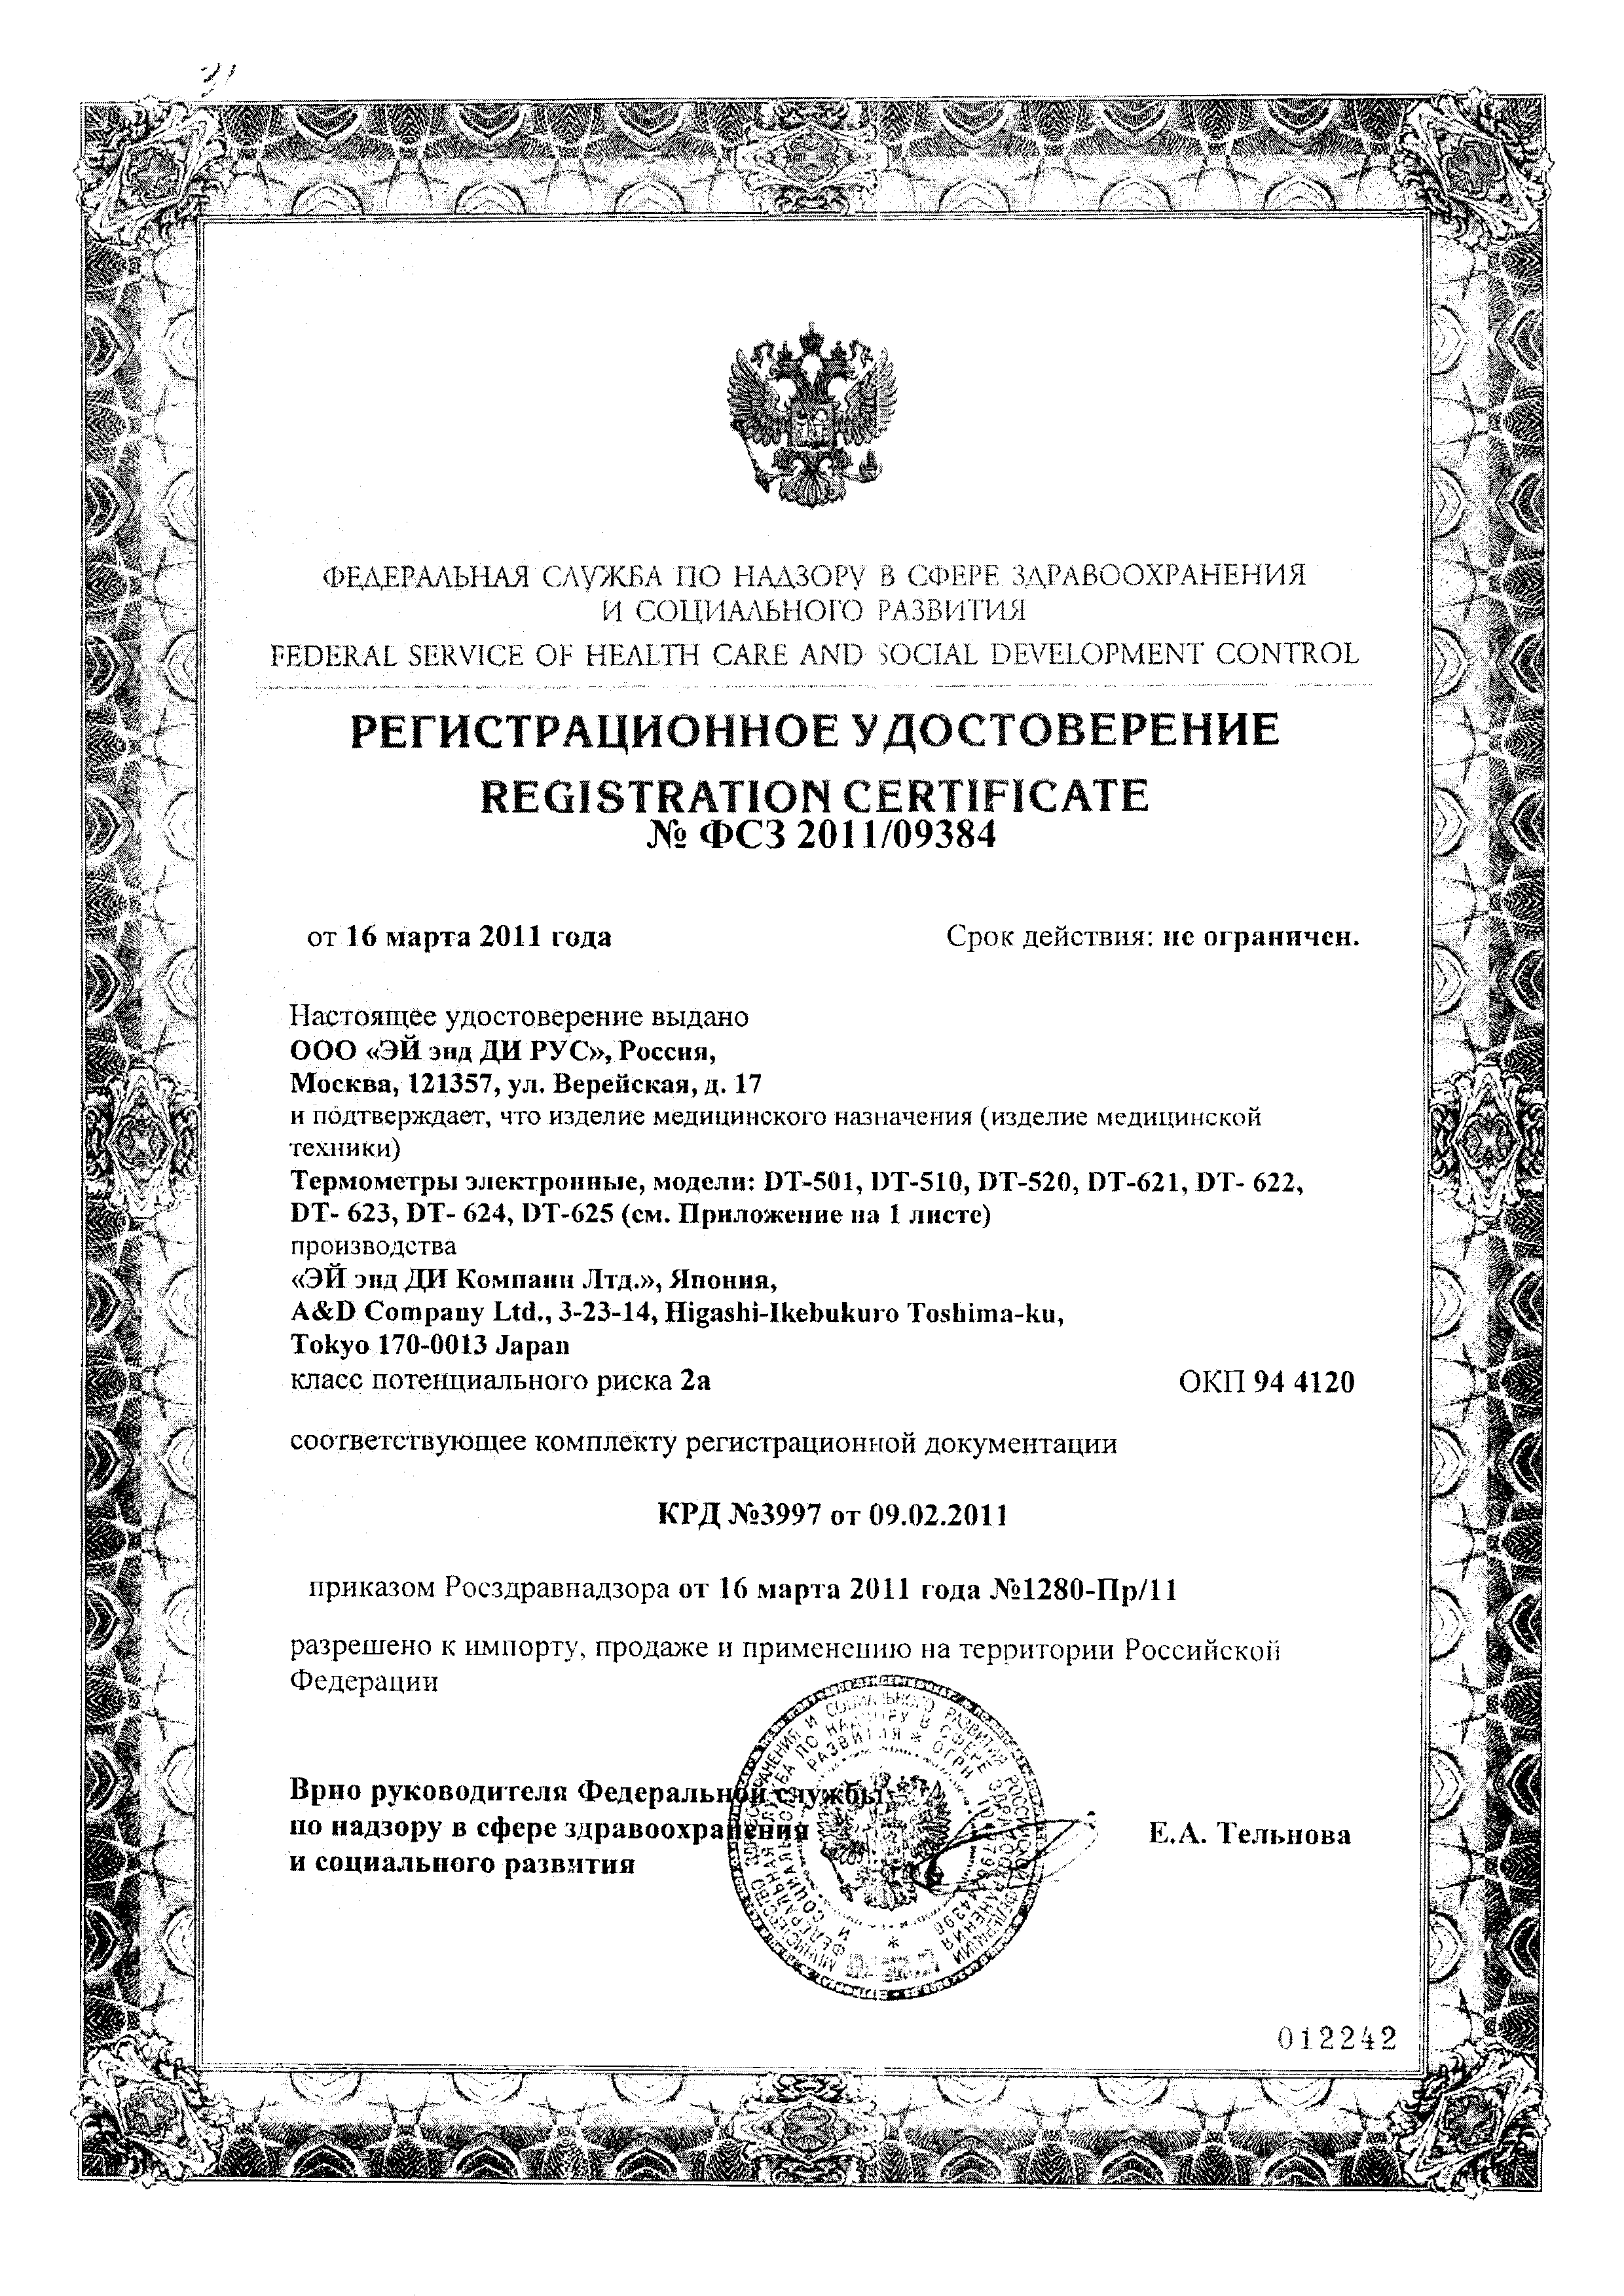 Термометр электронный DT-624 сертификат